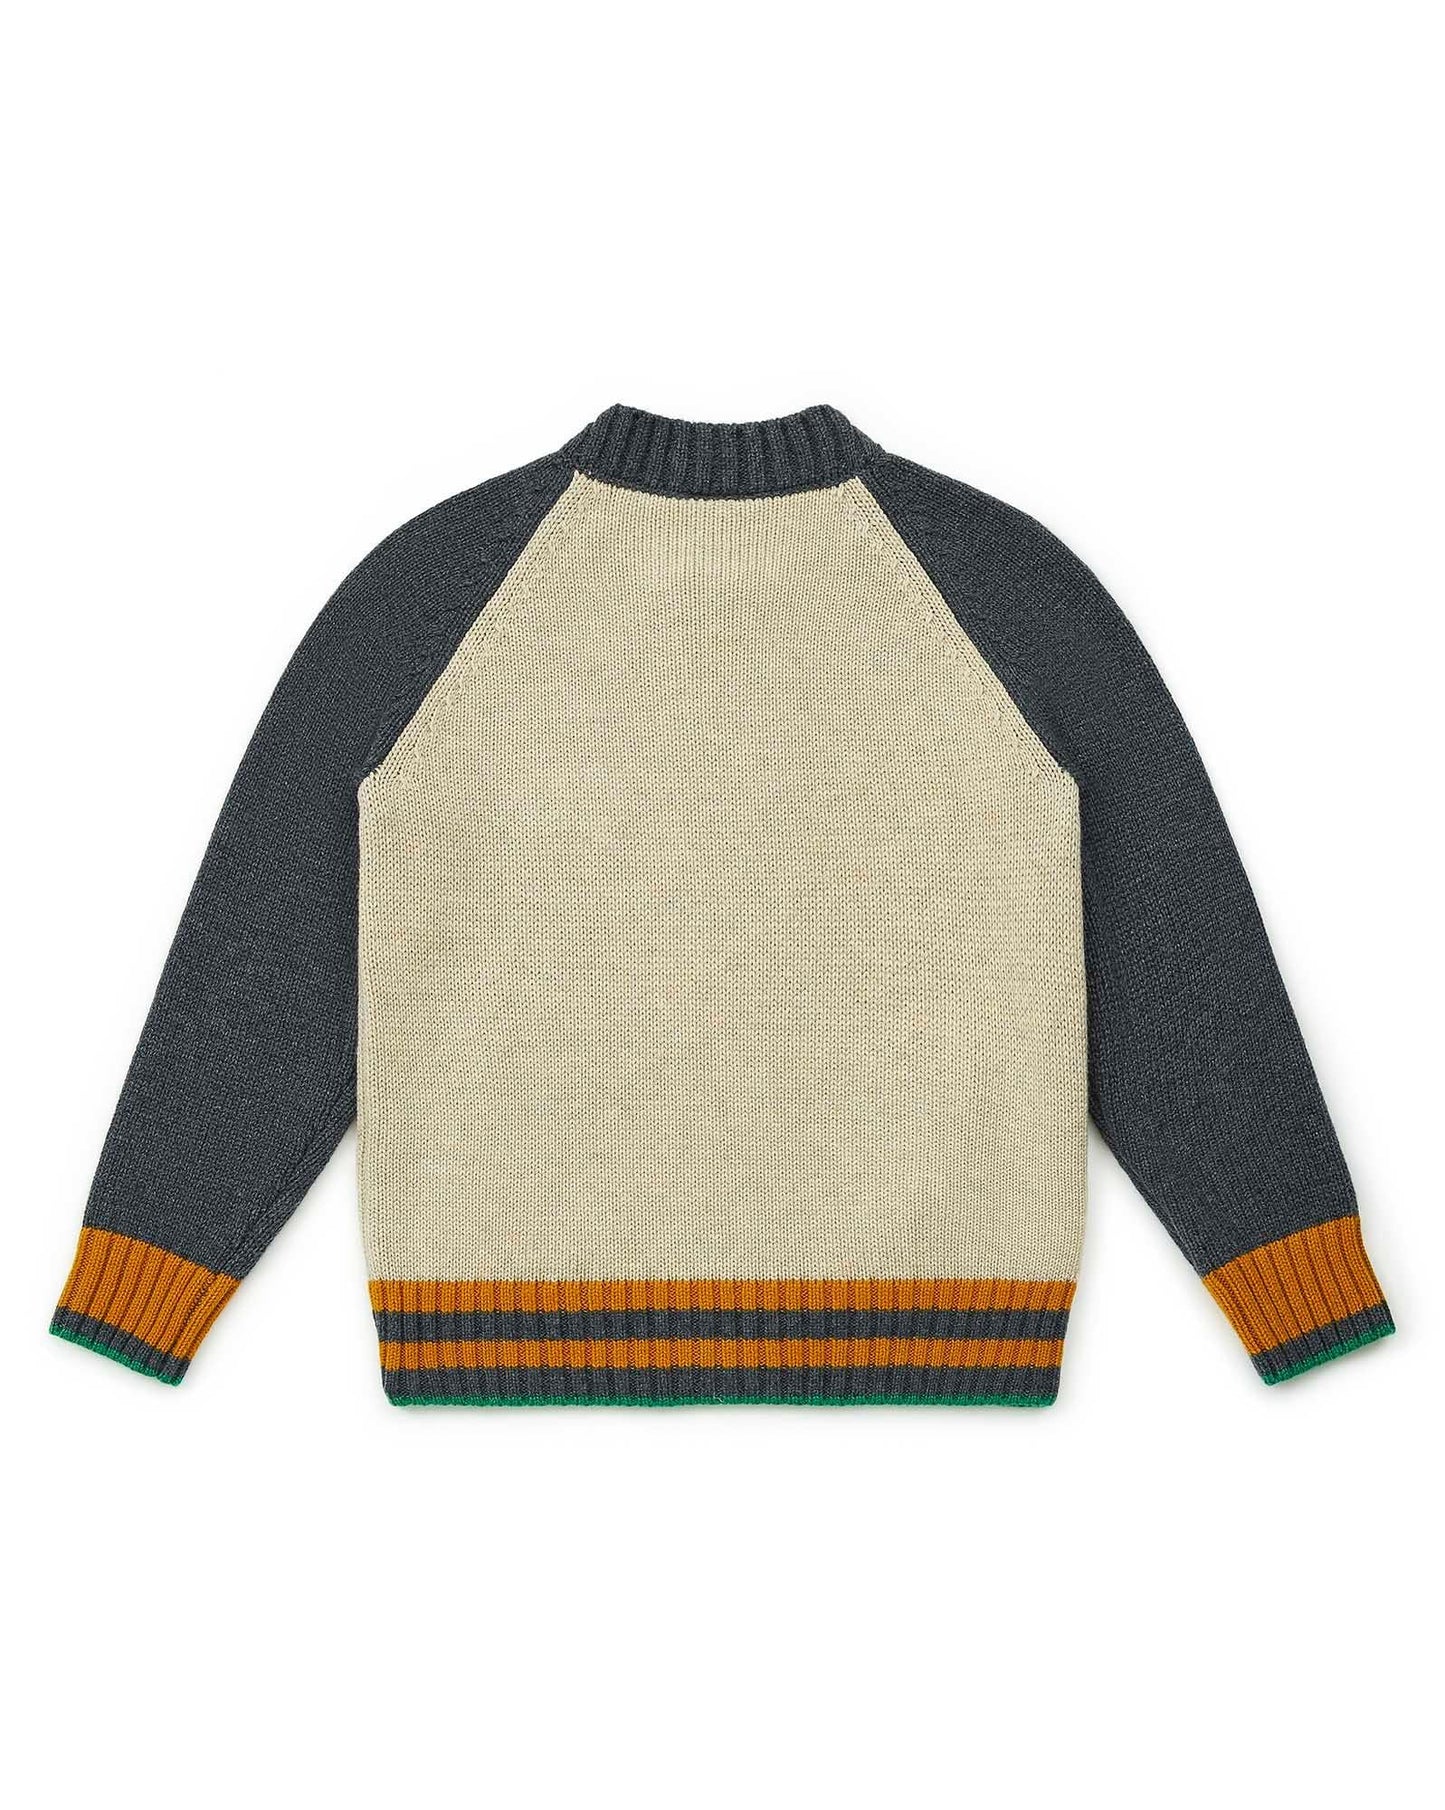 Cardigan Teddy Grey in a knit